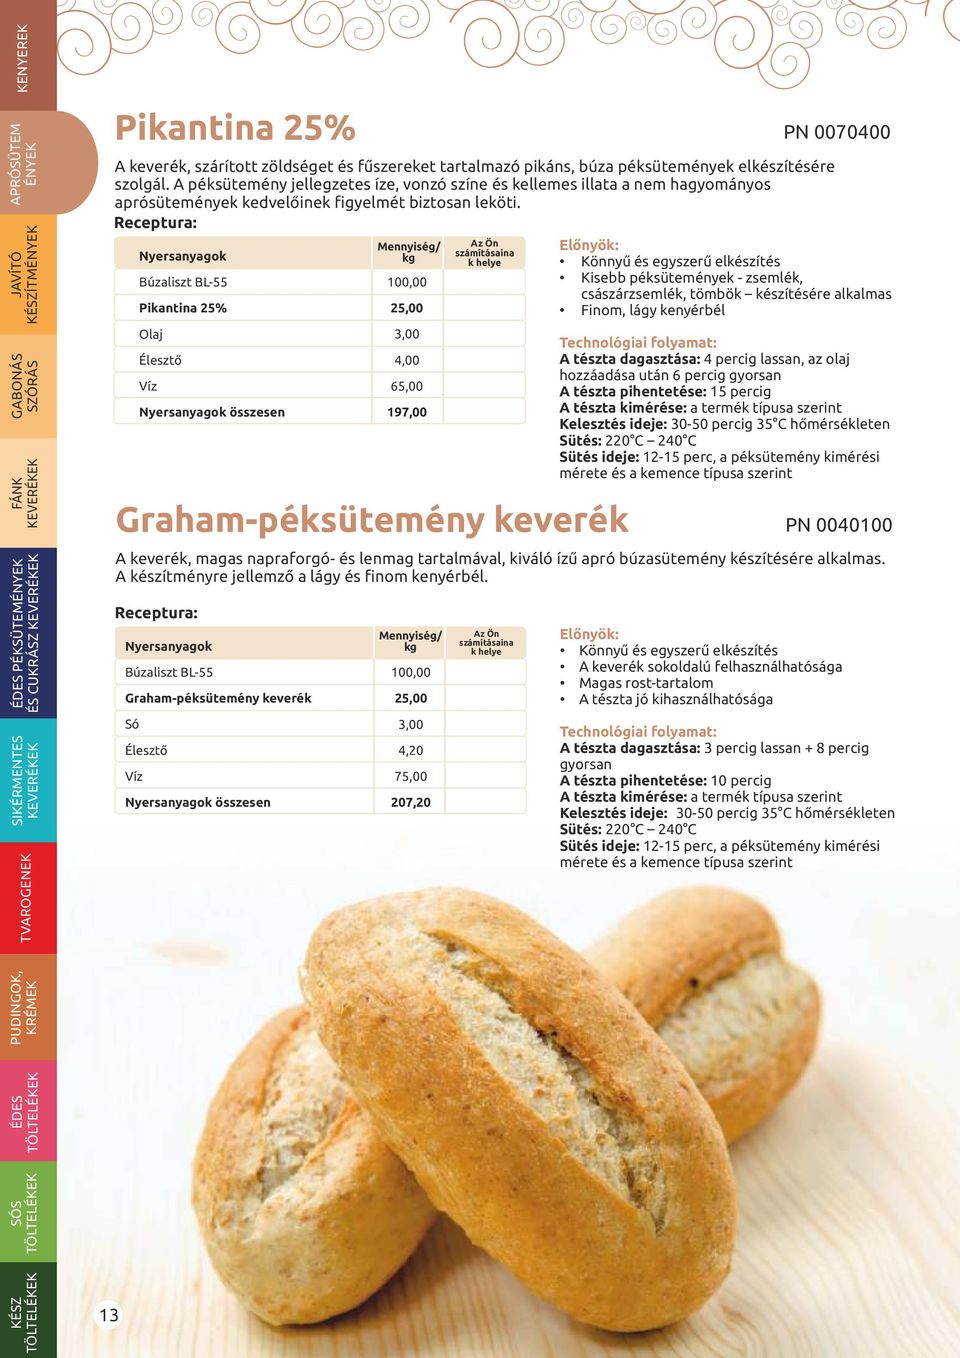 Graham-péksütemény keverék A keverék, magas napraforgó- és lenmag tartalmával, kiváló ízű apró búzasütemény készítésére alkalmas. A készítményre jellemző a lágy és finom kenyérbél.